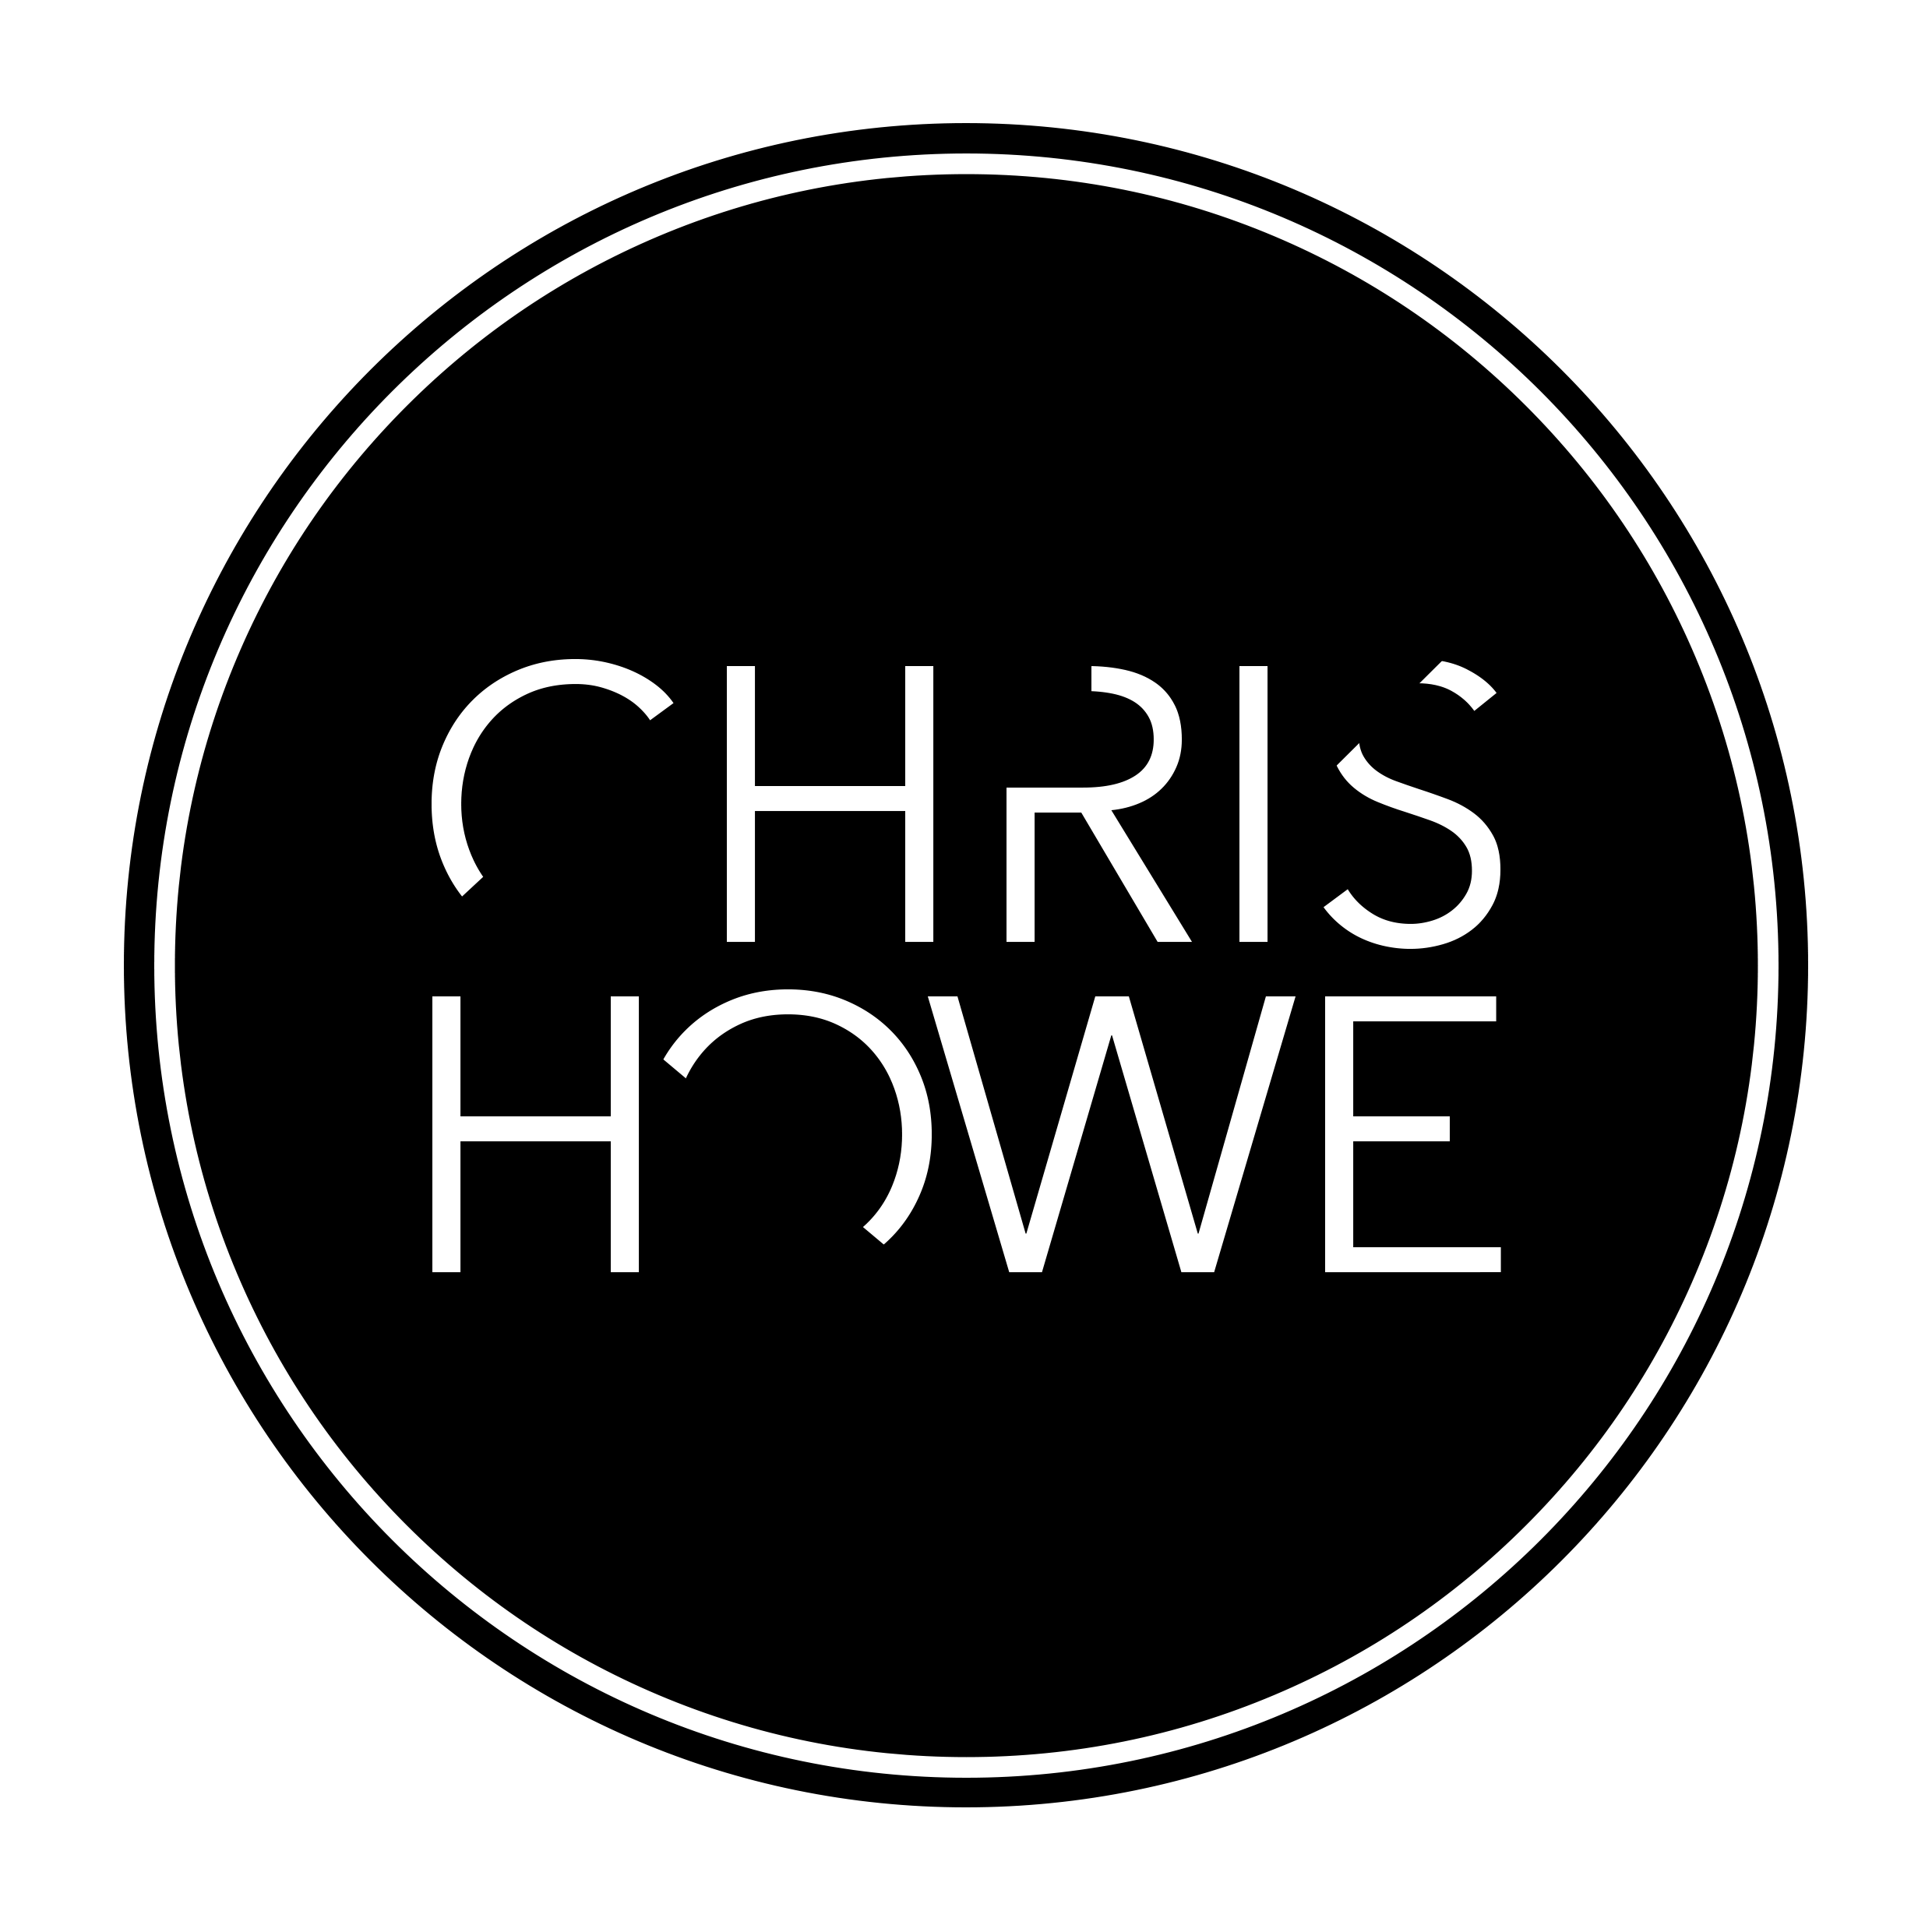 Chris Howe